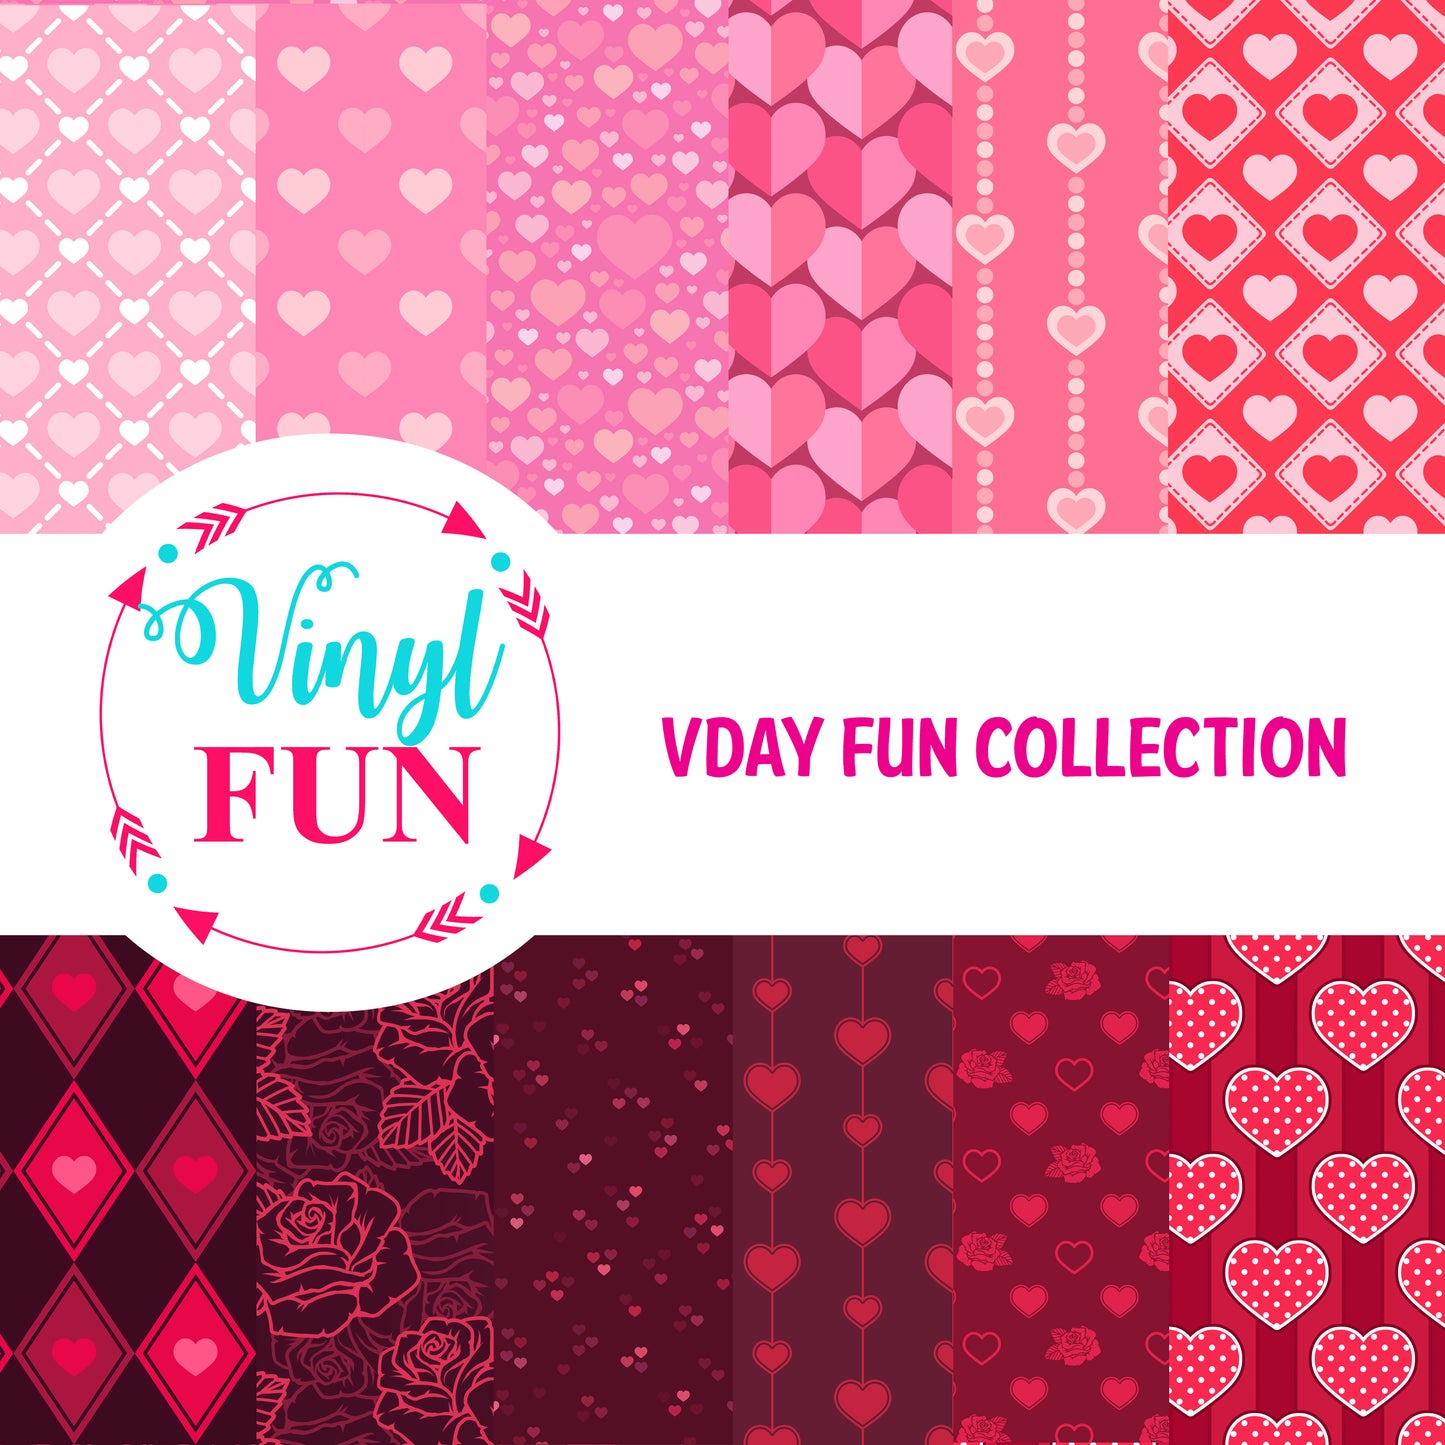 Vday Fun Collection